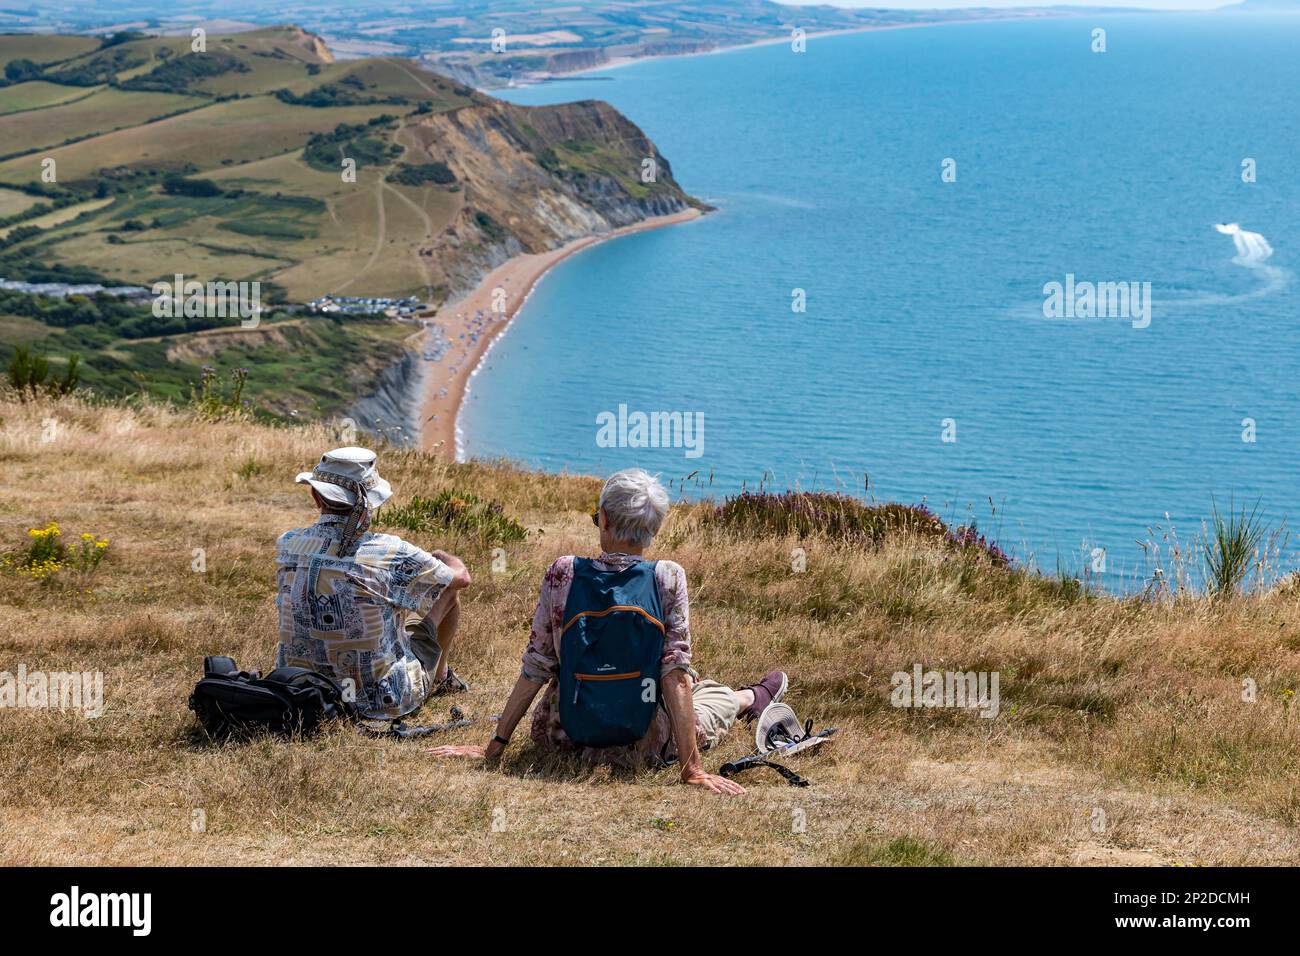 Couple de personnes âgées reposant sur le Cap d'Or avec vue sur la plage de Seatown, côte jurassique, Dorset, Angleterre, Royaume-Uni Banque D'Images